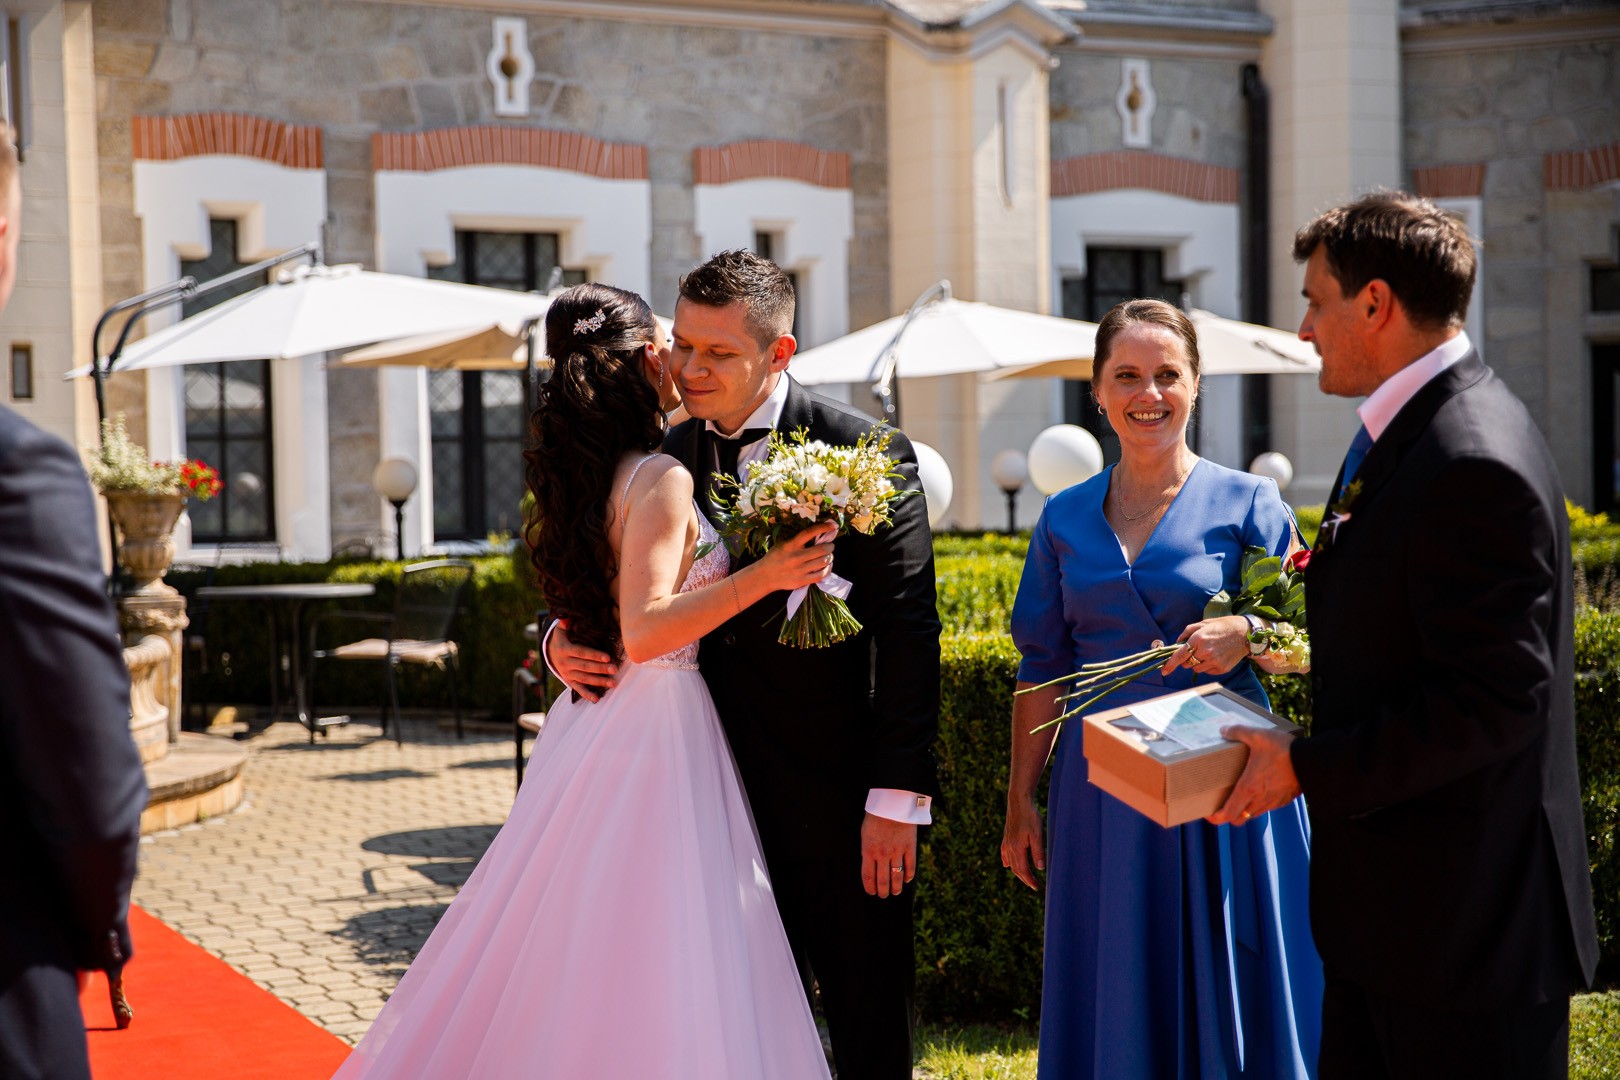 Picturesque dream wedding of Kloudy & Michal in Hluboká nad Vltavou. - 0213.jpg